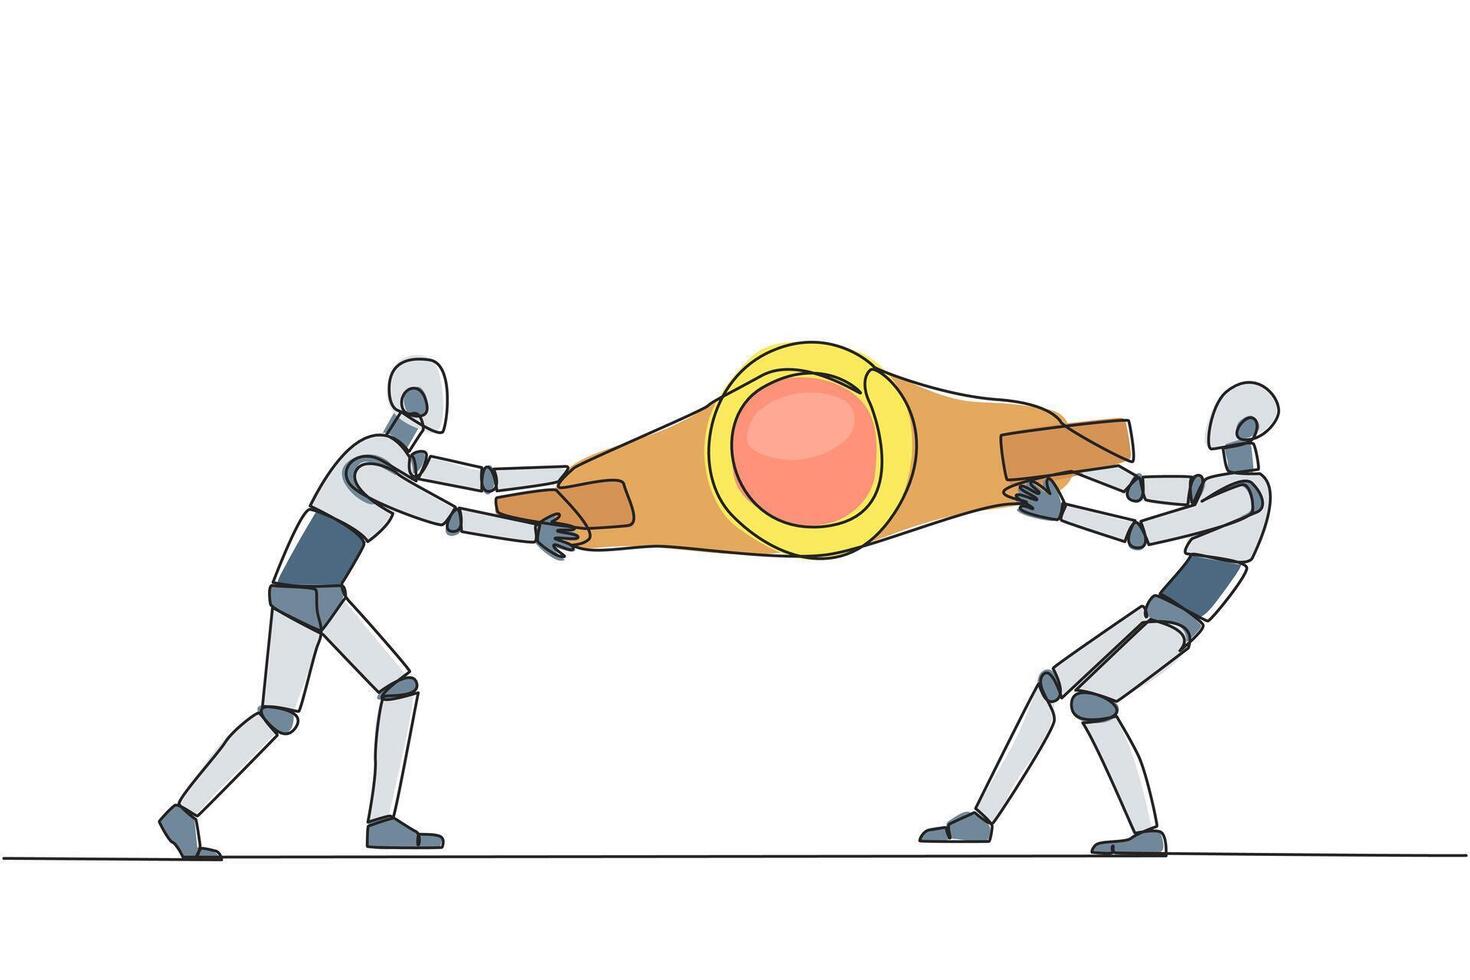 Single kontinuierlich Linie Zeichnung zwei emotional Roboter Kampf Über Boxen Gürtel. Kampf zum zu Sein das größte und am stärksten Roboter. Roboter Schlacht. Zukunft Technologie. einer Linie Design Illustration vektor